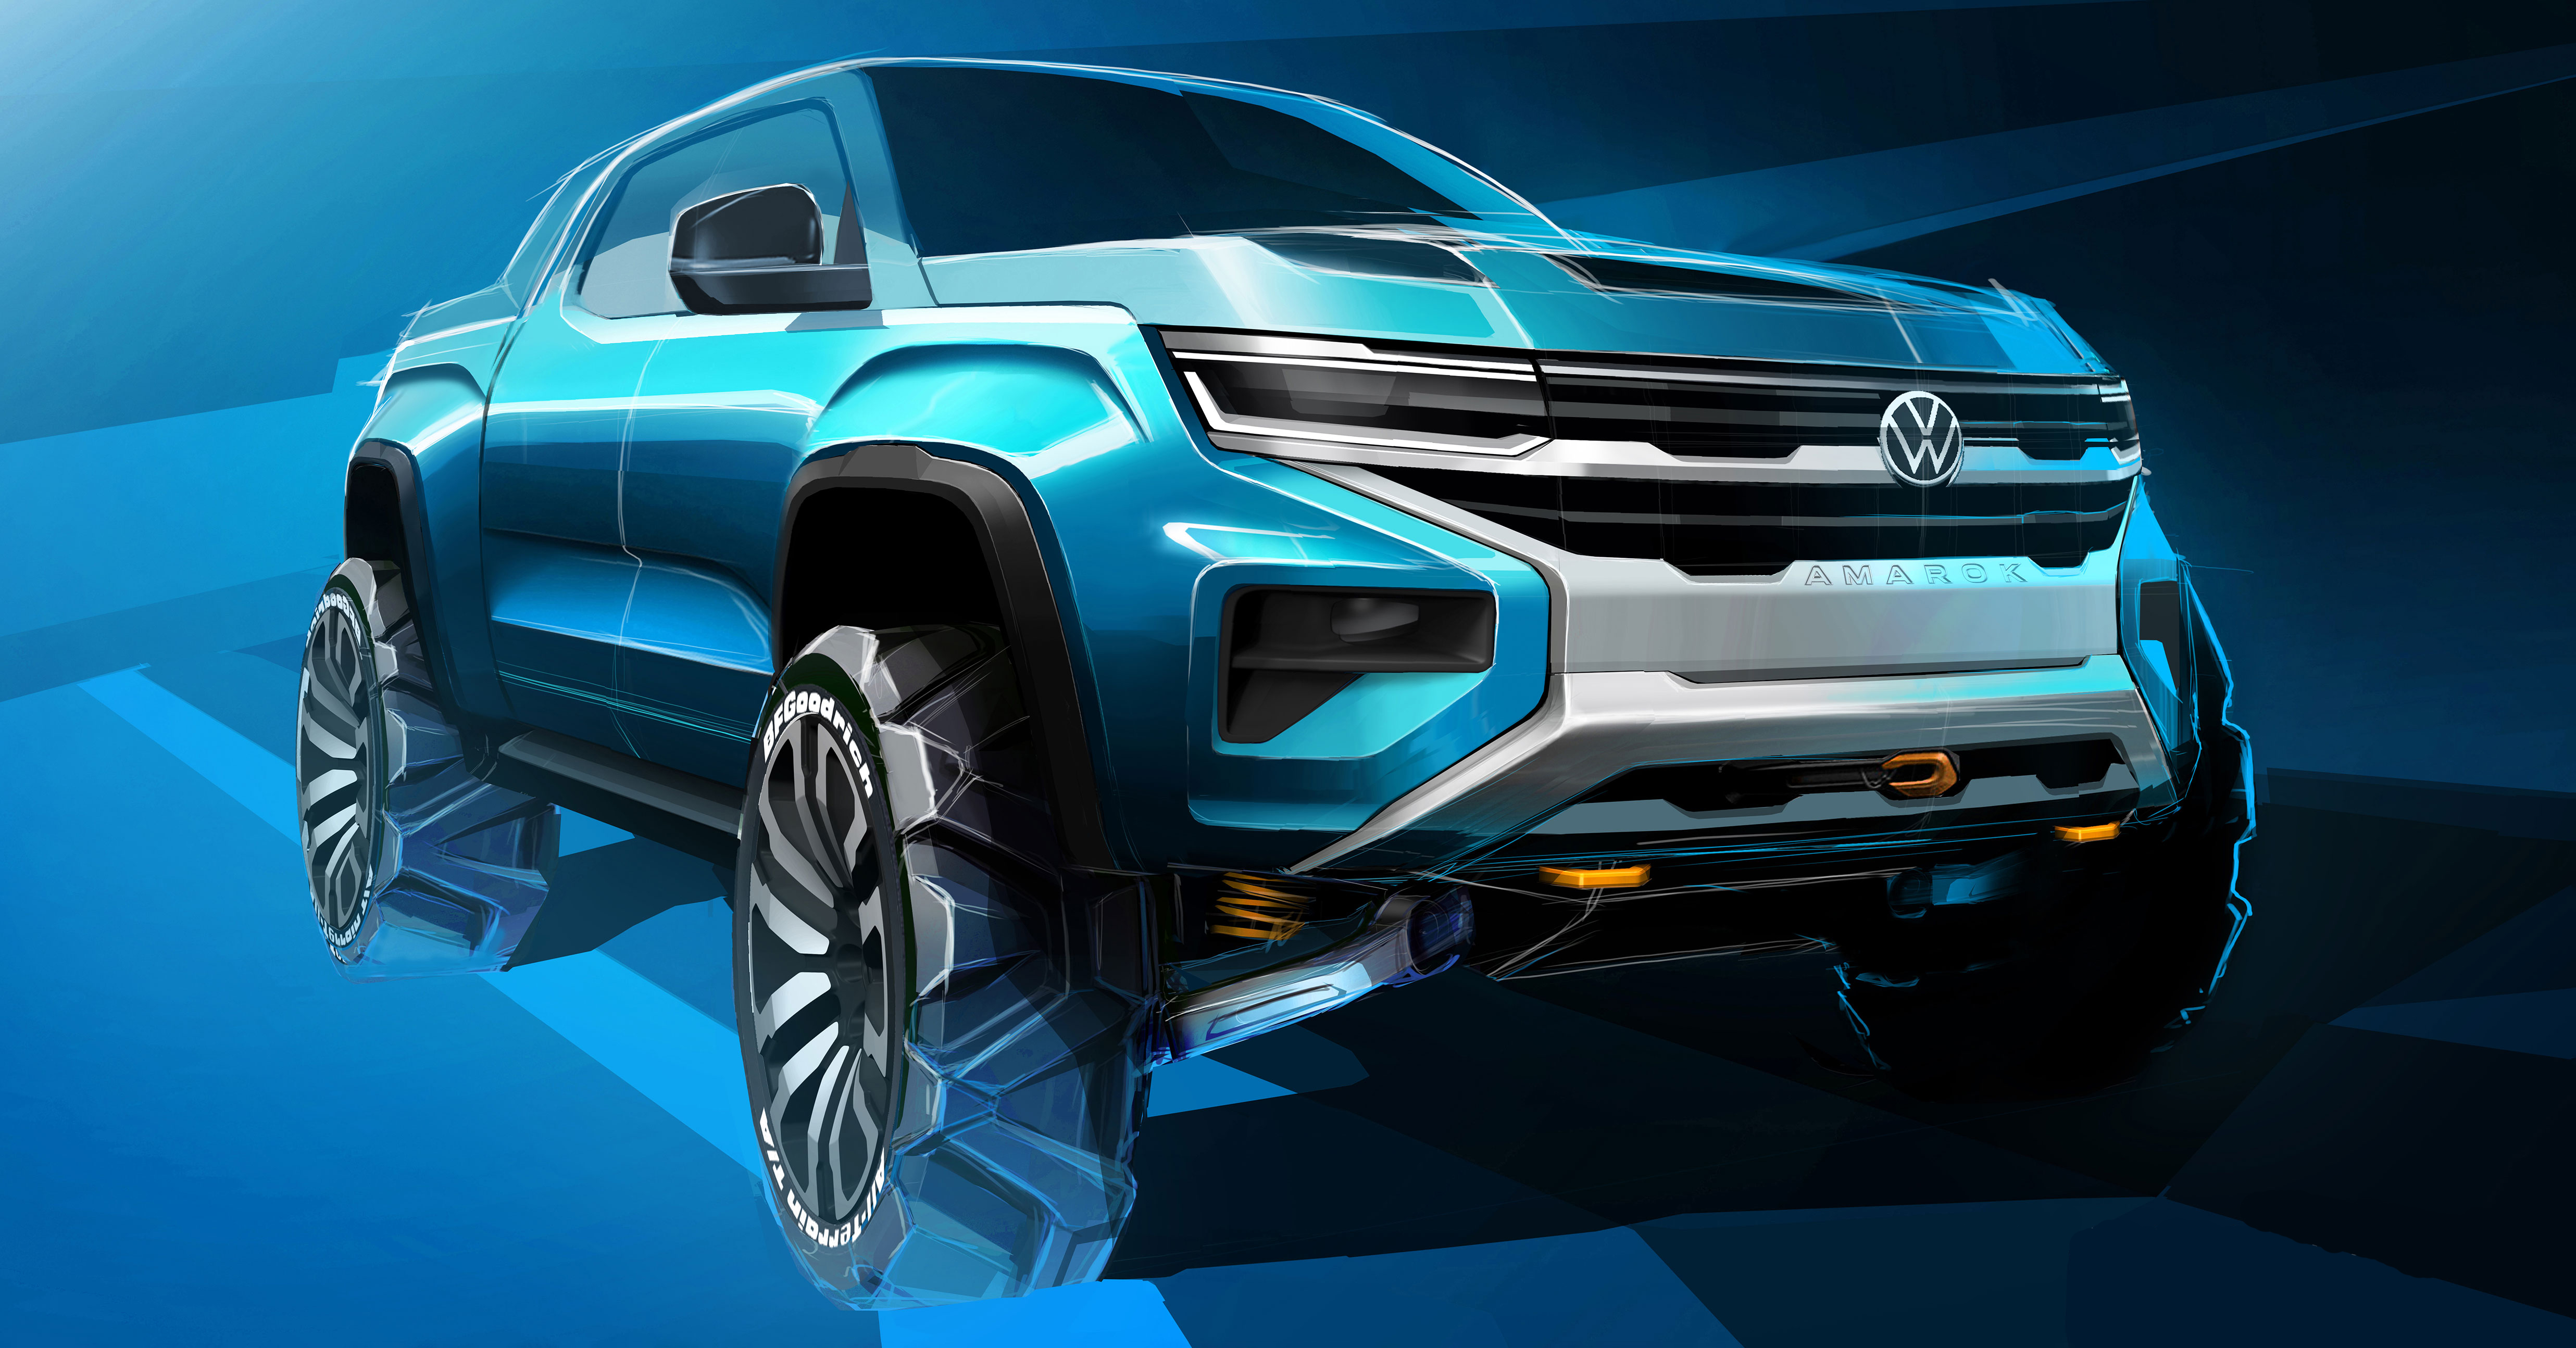 2023 Volkswagen Amarok Near-Production Sketches (4)